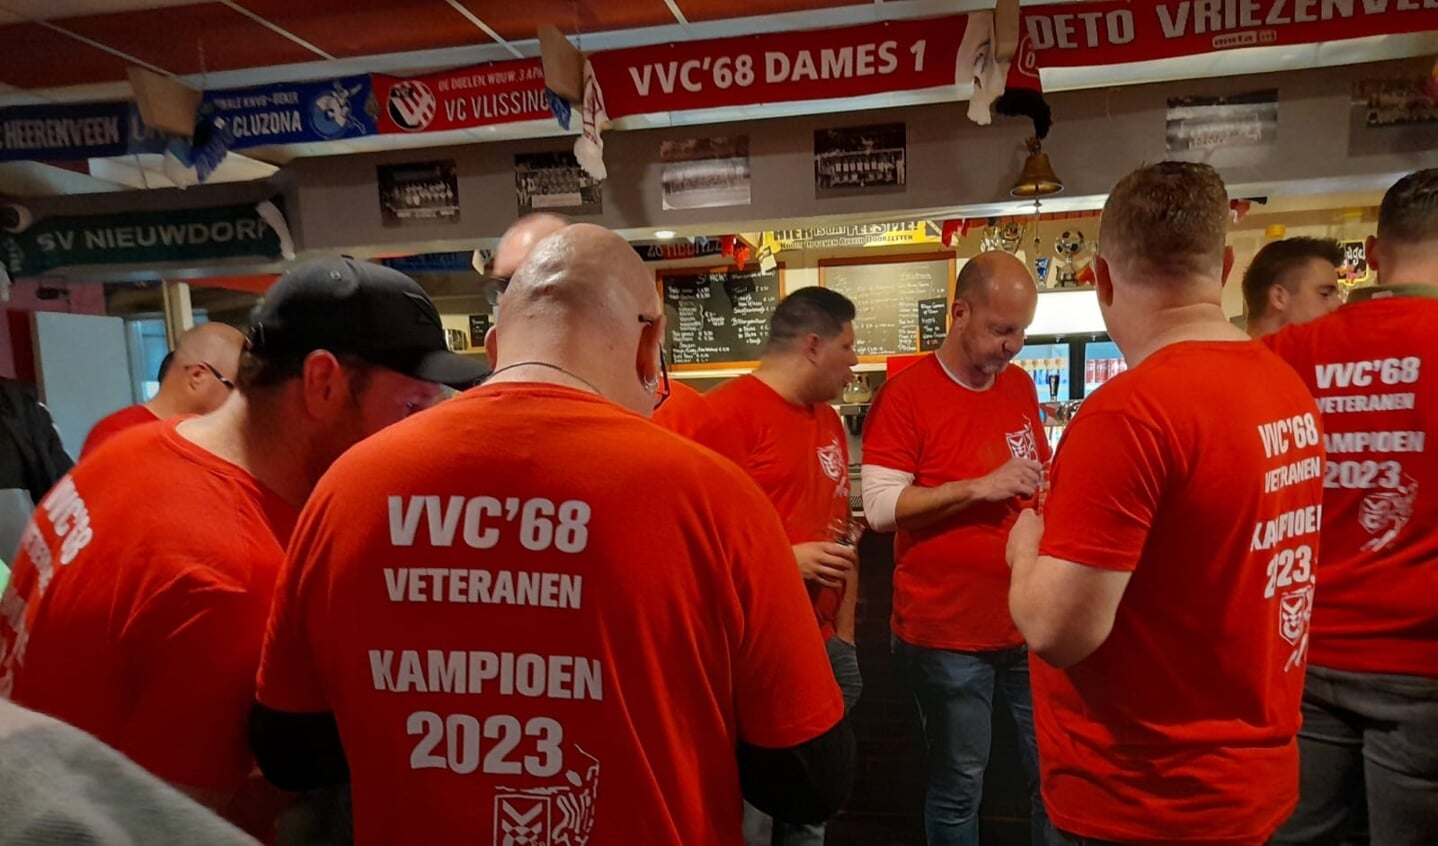 VVC veteranen kampioen.